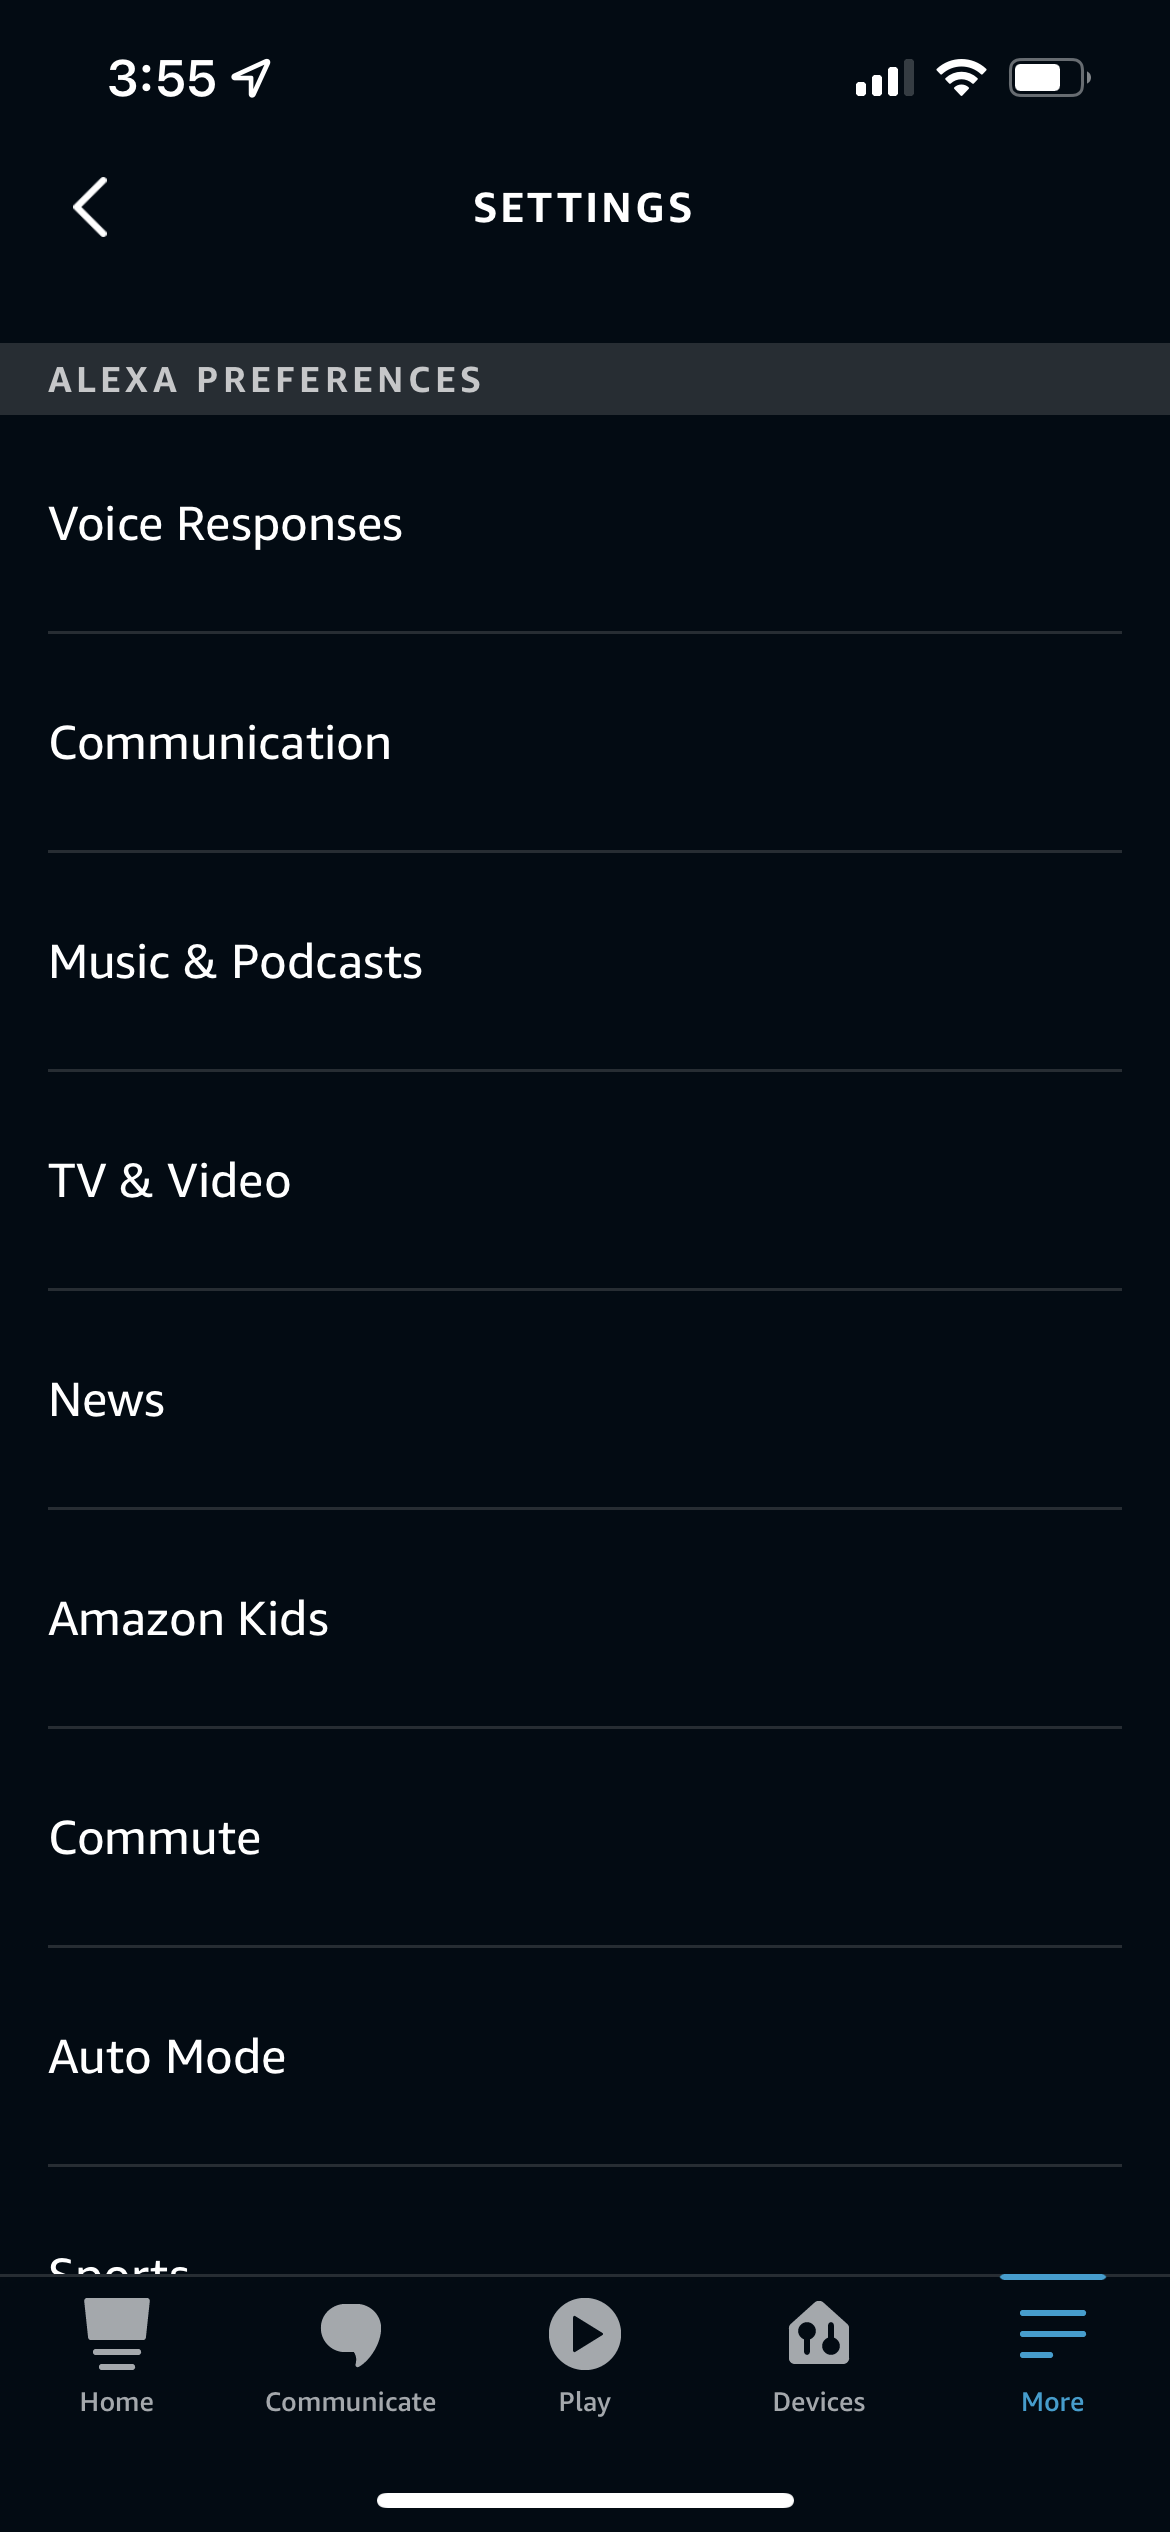 The Amazon Alexa Settings menu